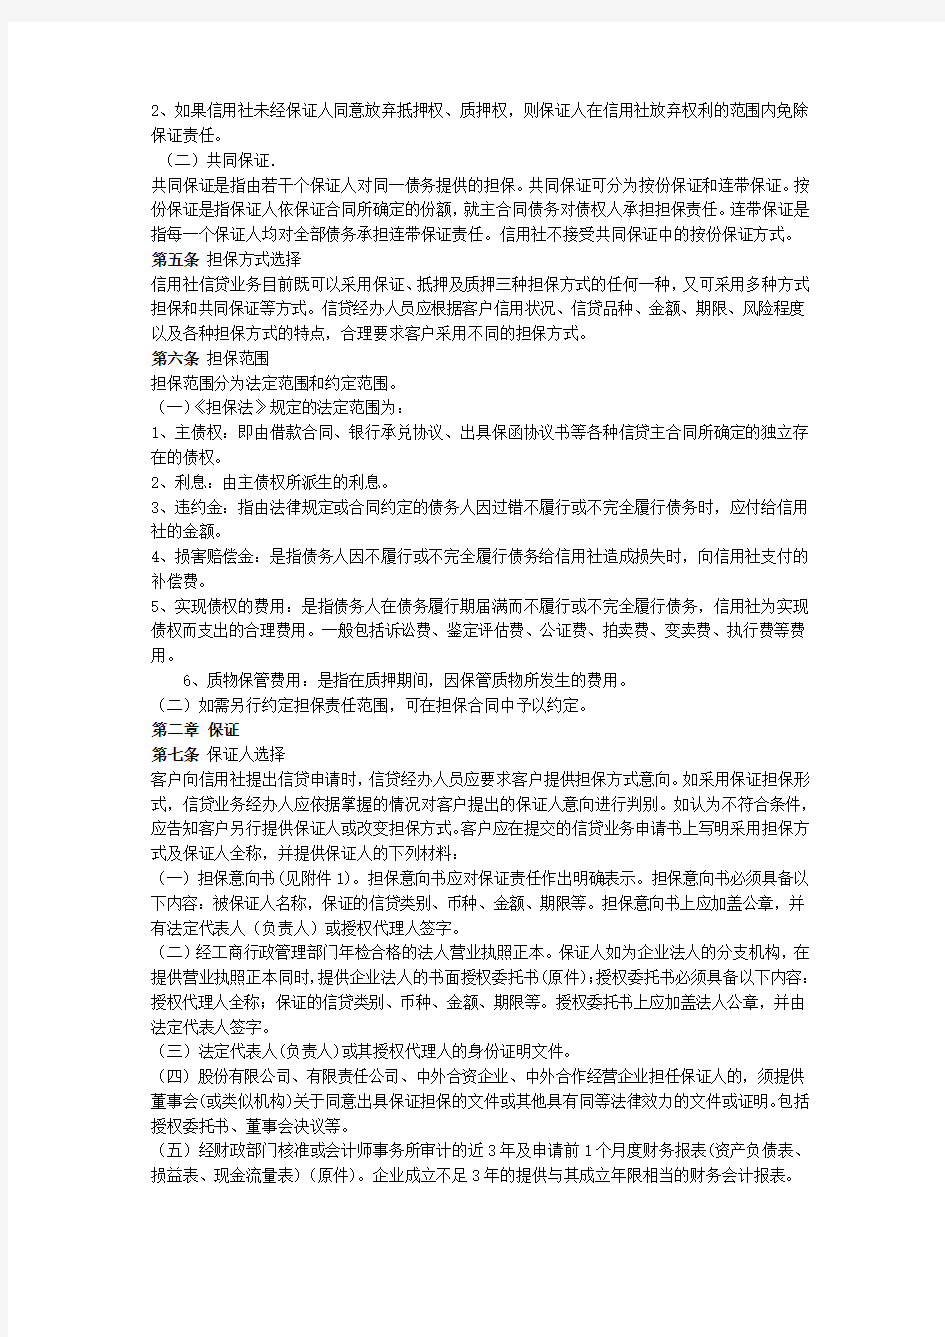 河北省农村信用社担保业务管理办法试行